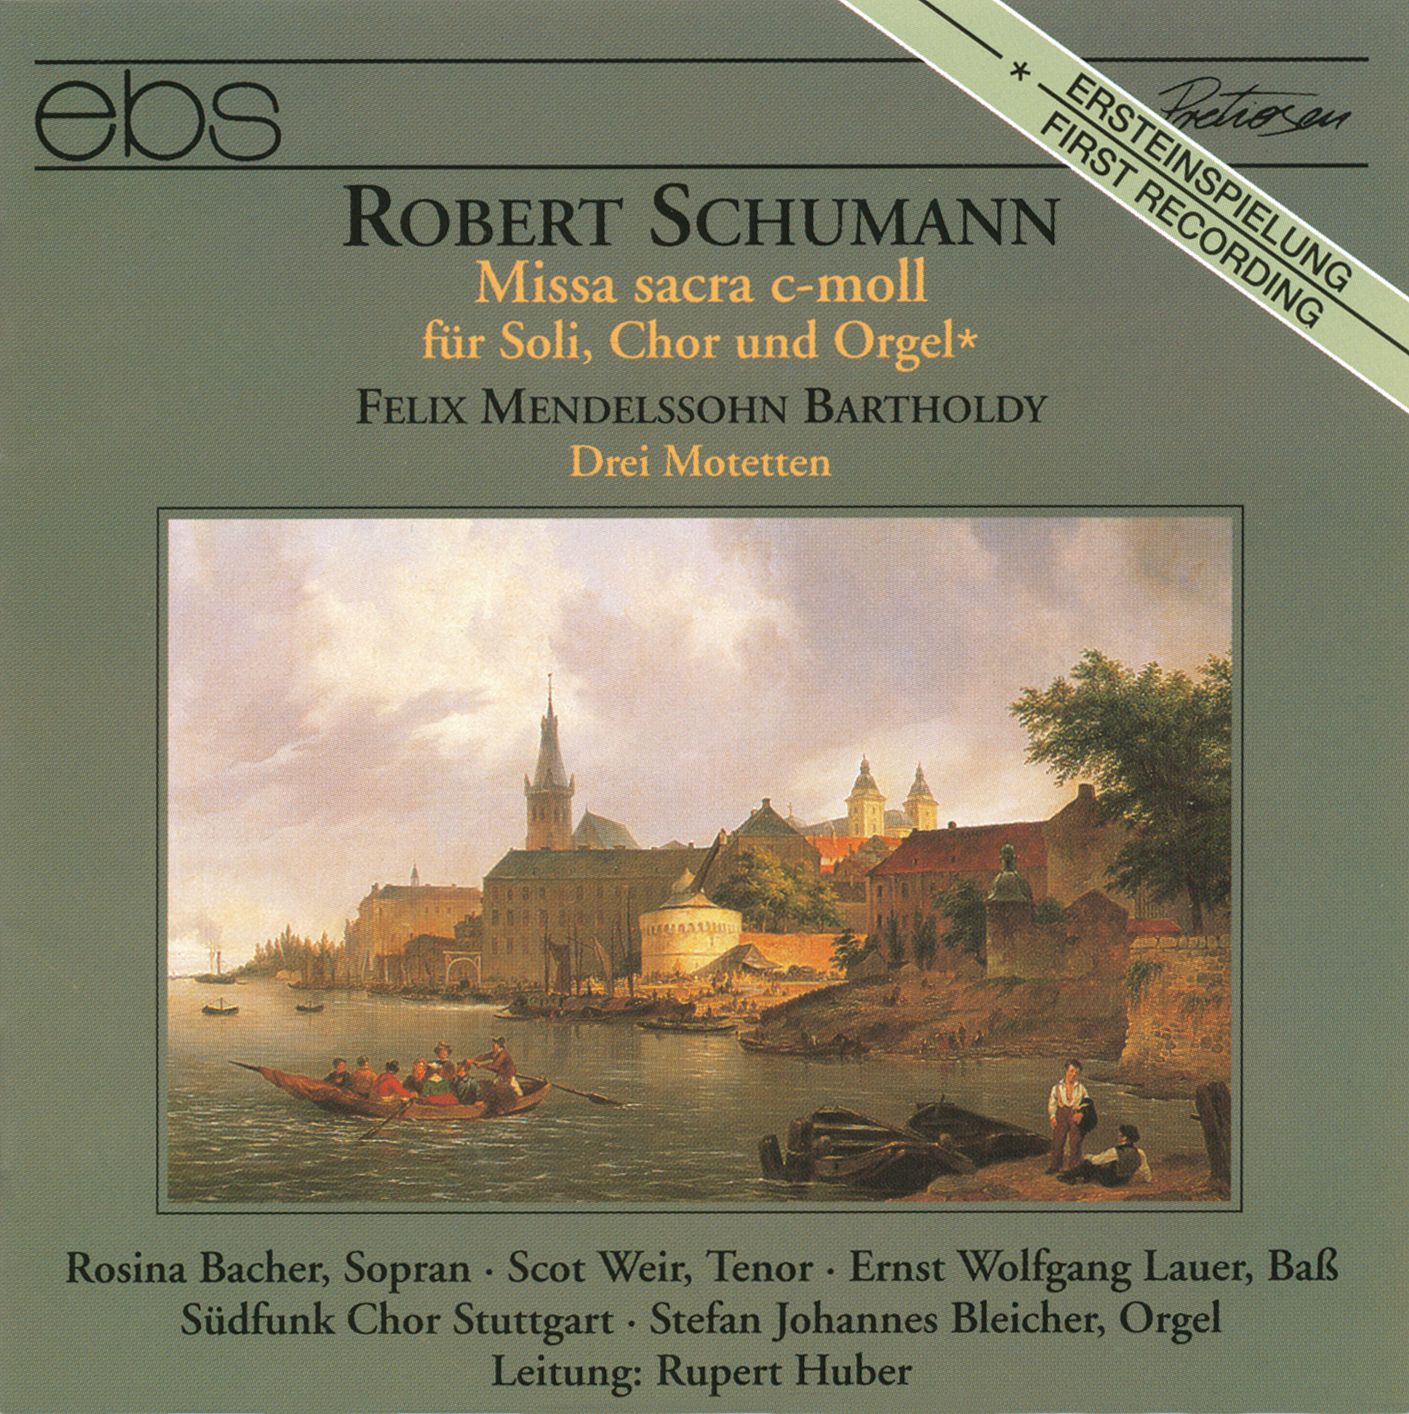 Robert Schumann - Missa sacra c-moll